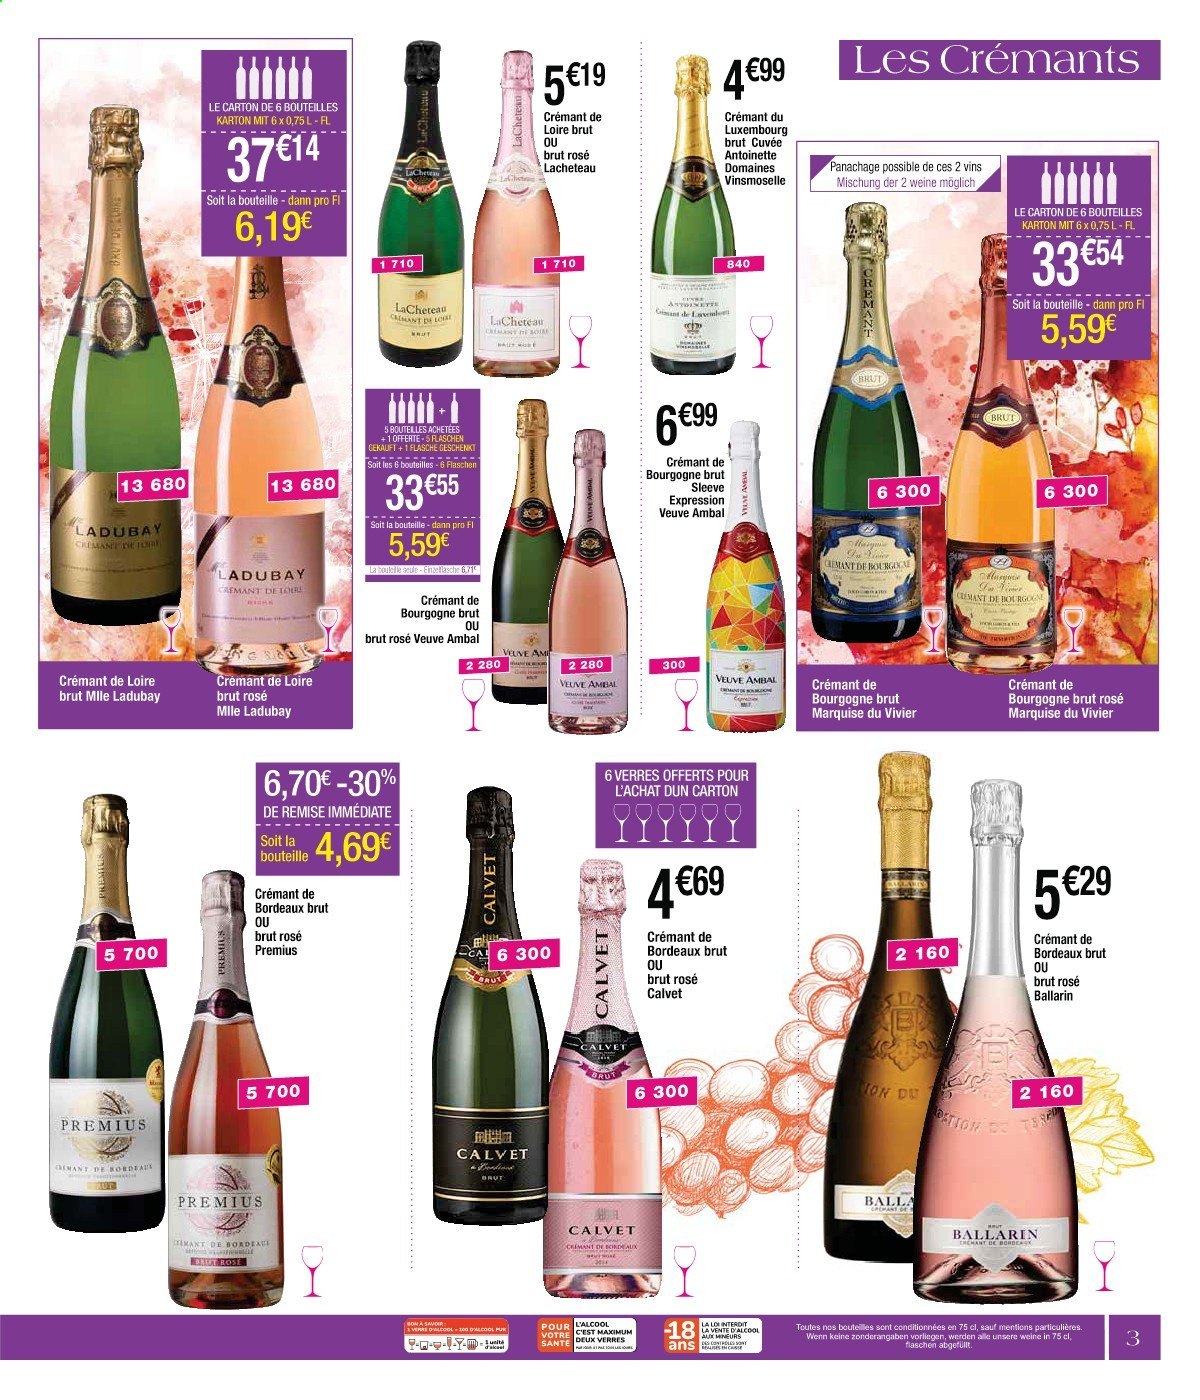 thumbnail - Catalogue Cora - 13/08/2021 - 29/01/2022 - Produits soldés - Bordeaux, vin rouge, vin, Crémant de Bordeaux, Crémant de Bourgogne. Page 3.